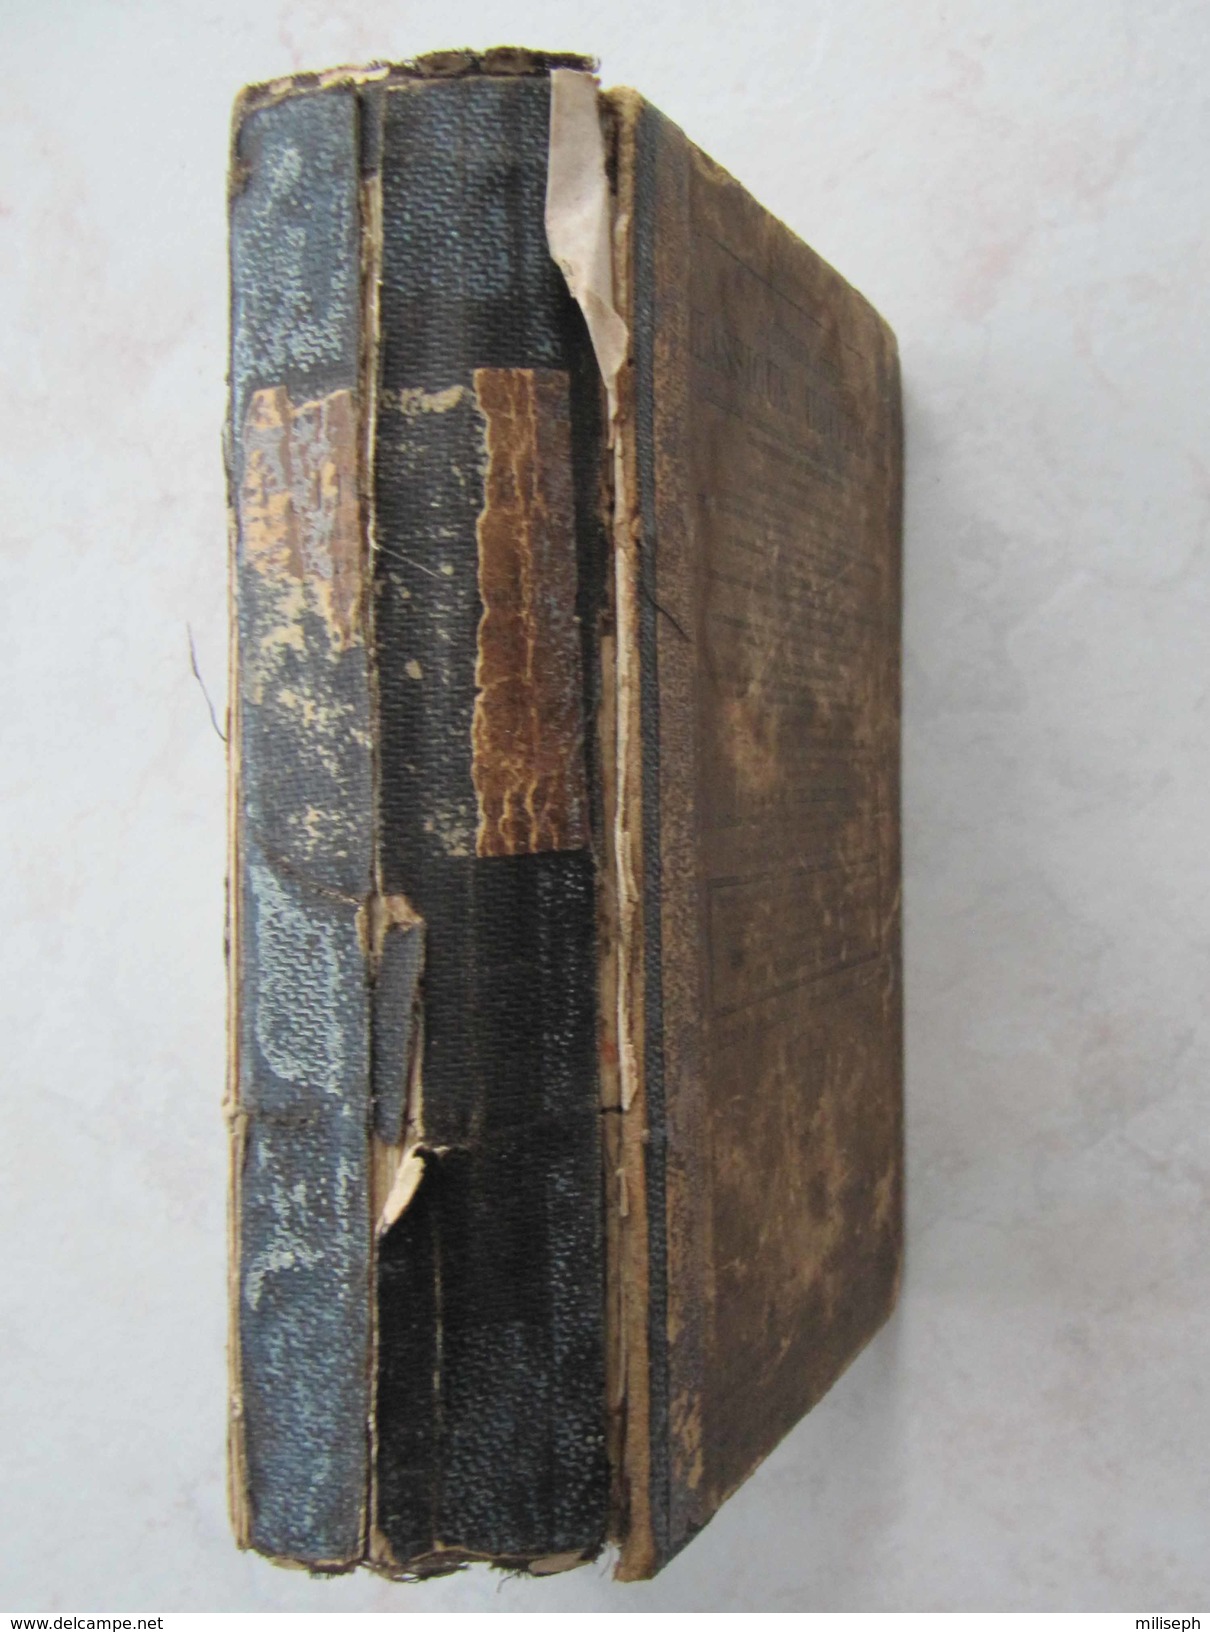 Livre Rare Et Ancien - DICTIONNAIRE Classique Universel Par BENARD Th.- Librairie Eugène Belin - 1872 - (4304) - Dictionnaires